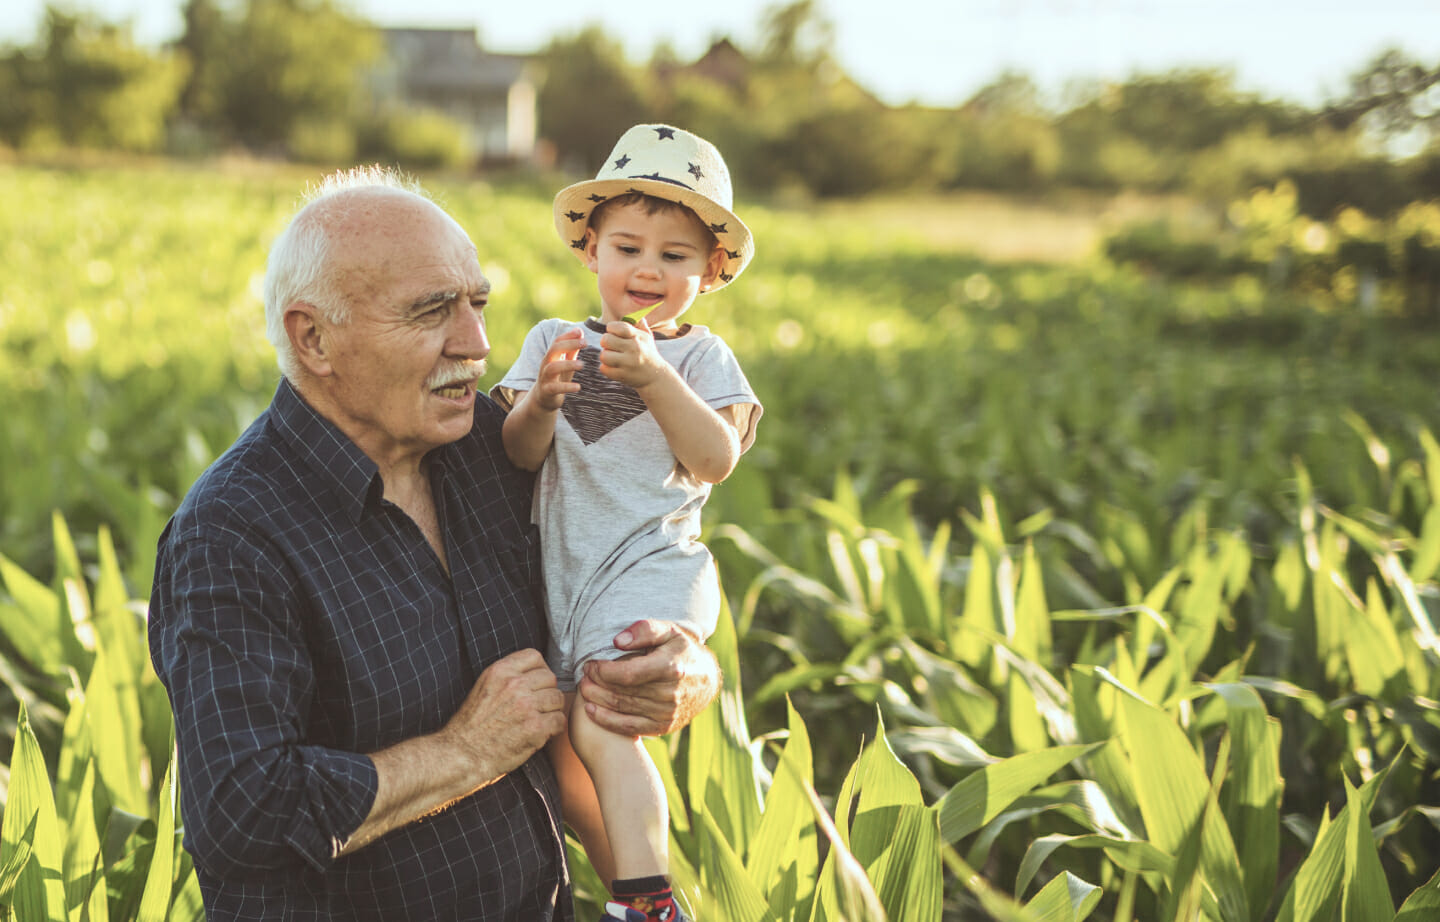 Farmer in field with grandchild